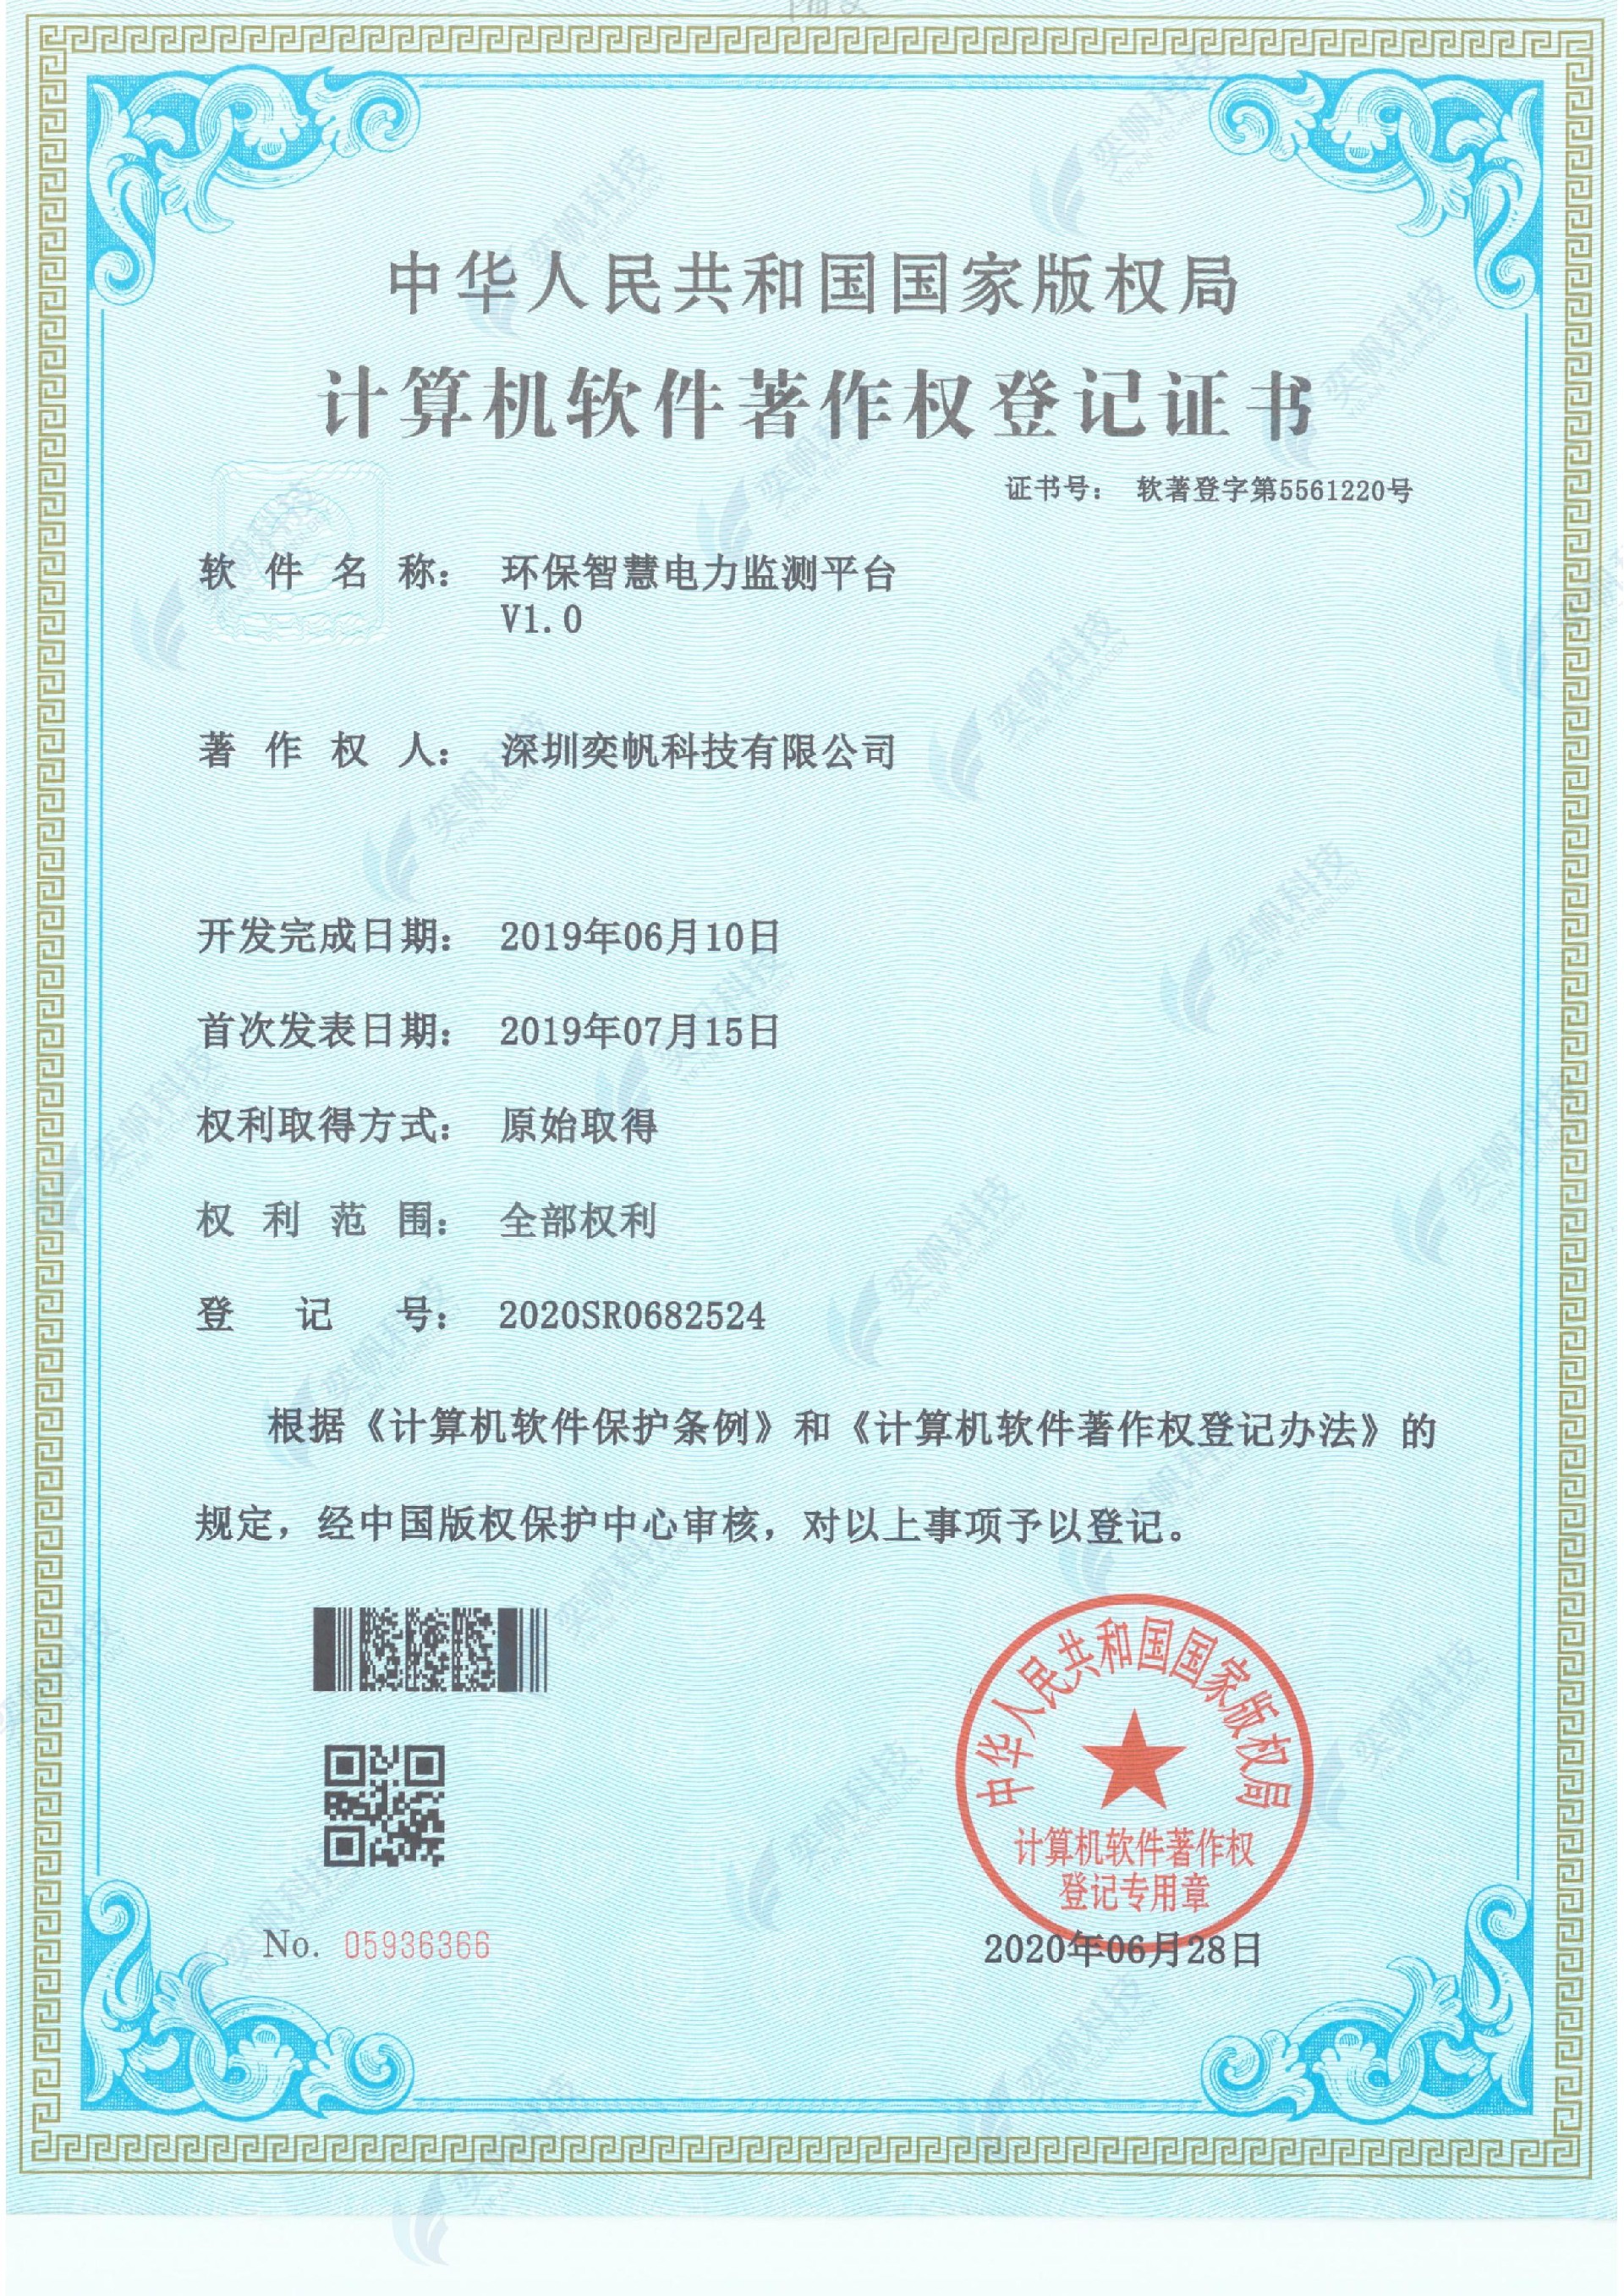 环保智慧电力监测平台-计算机软件著作权登记证书_00.jpg